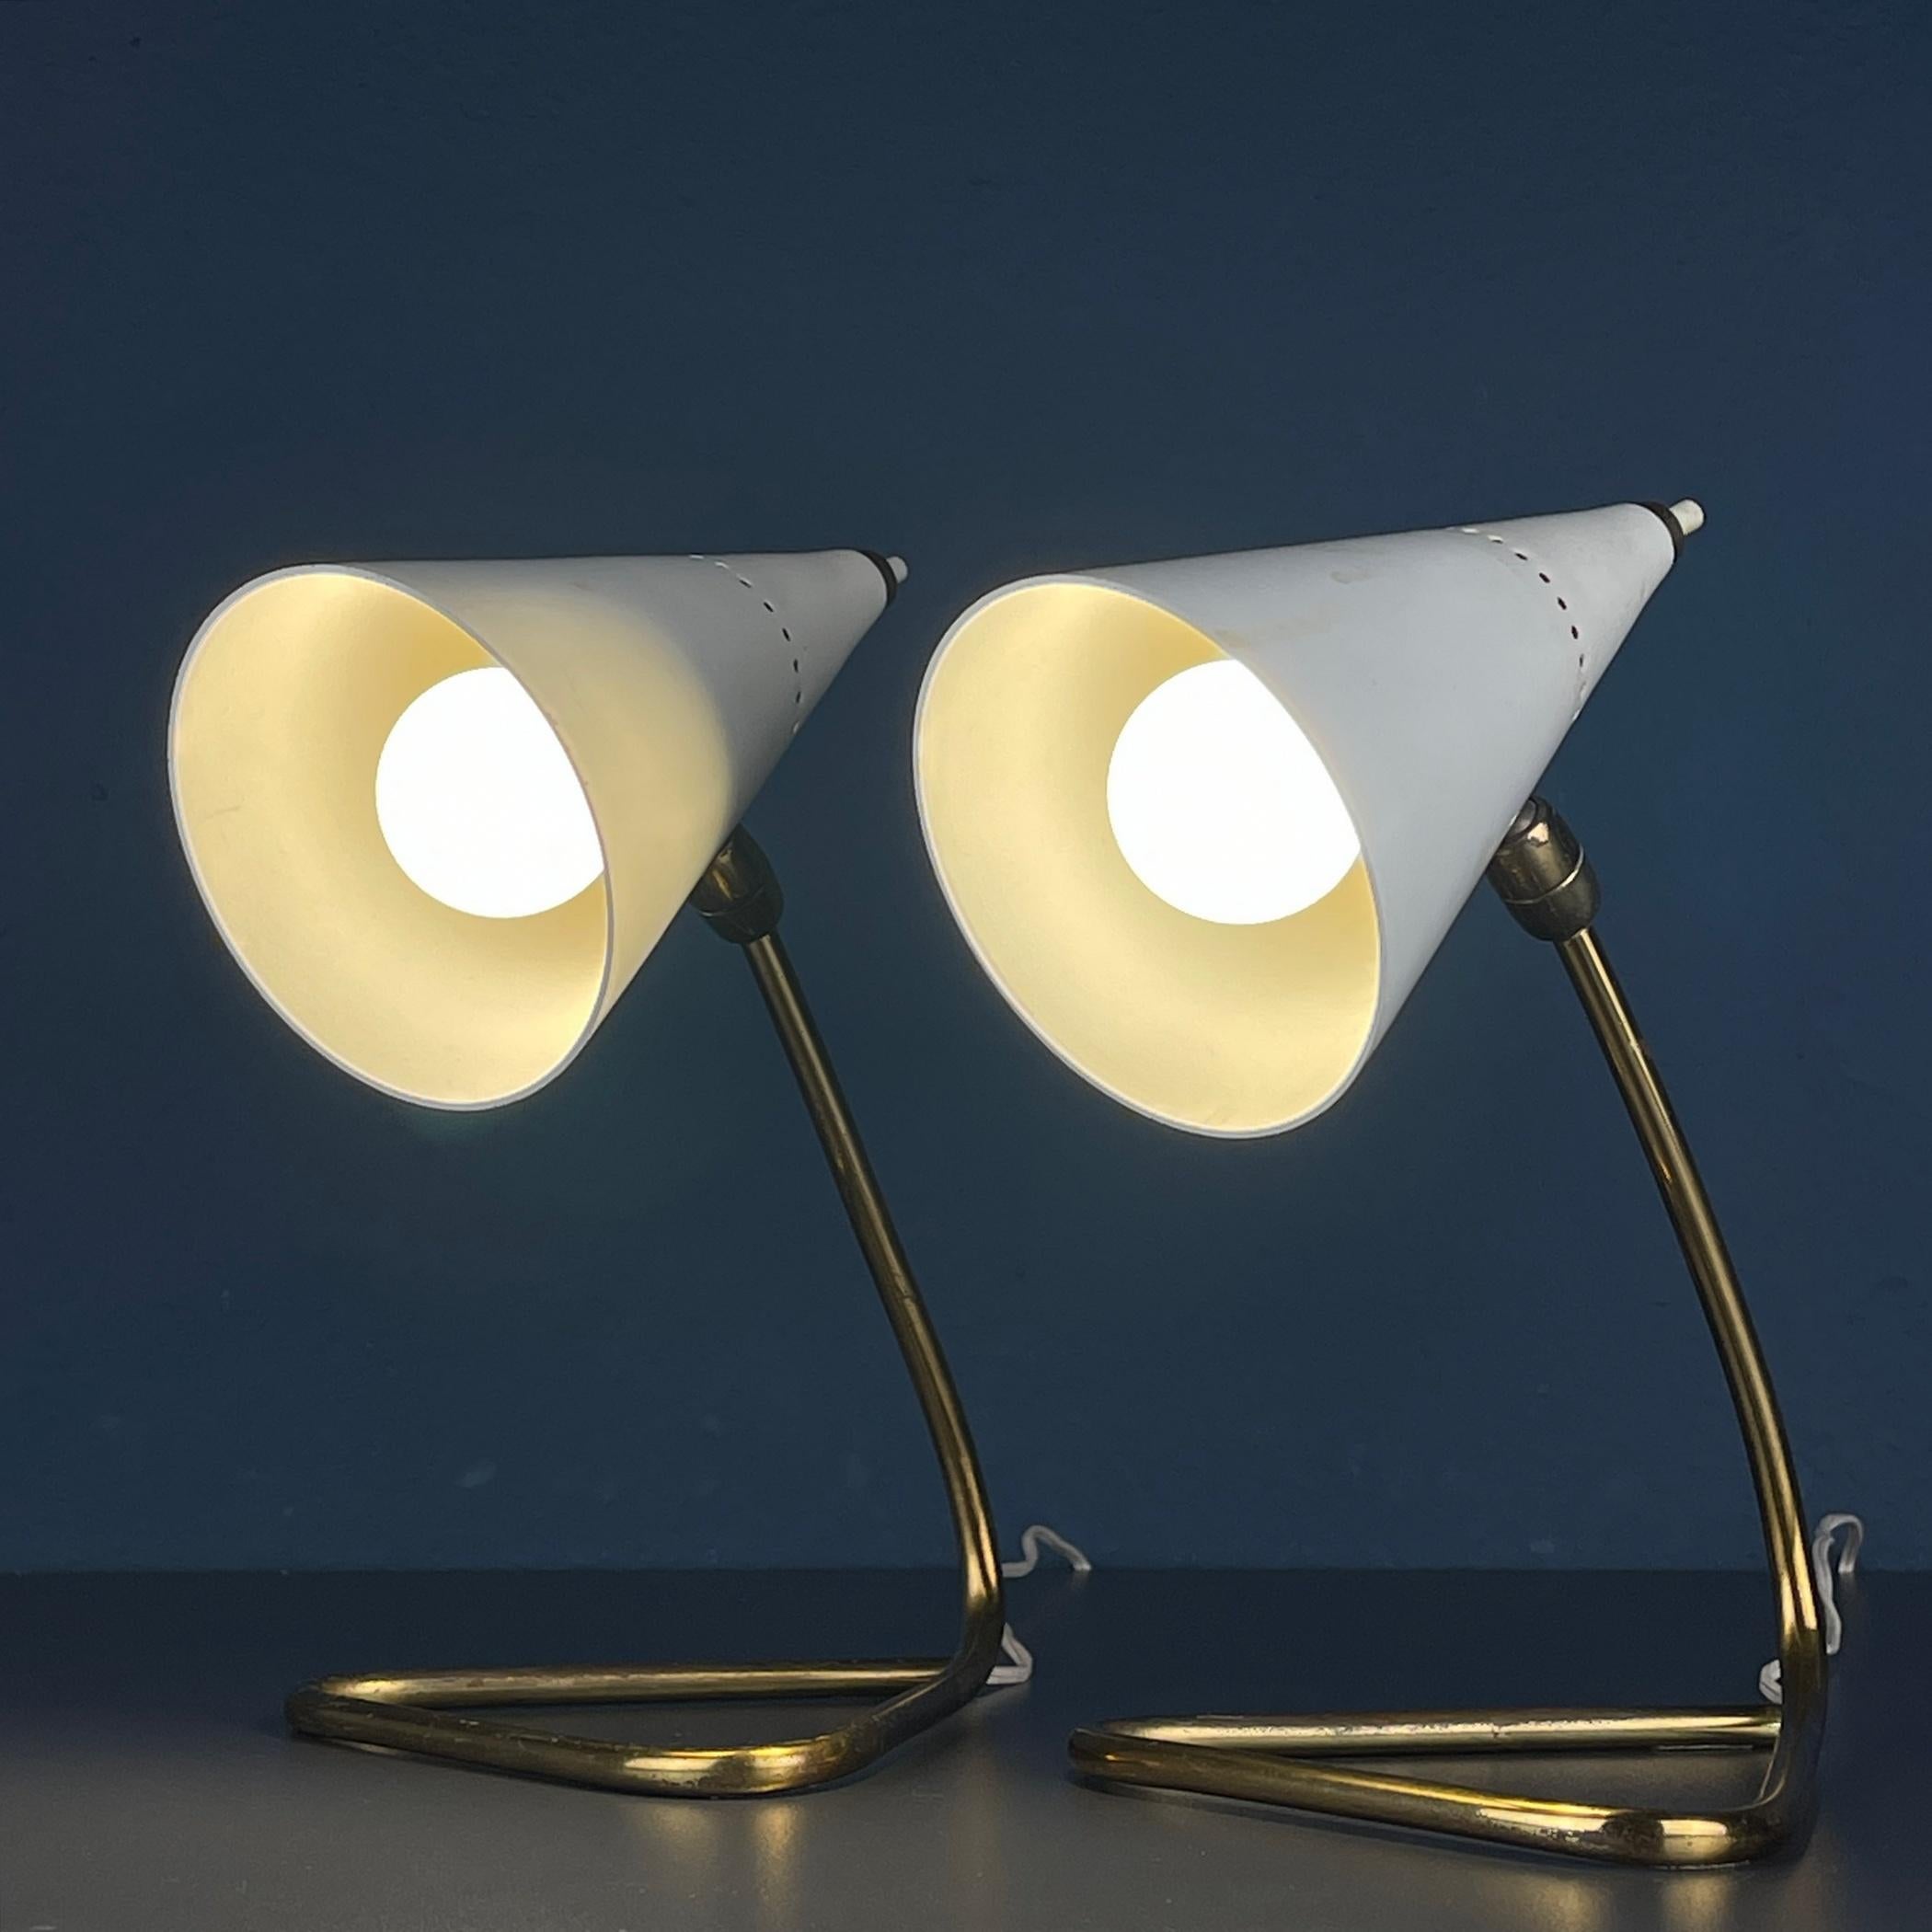 Eine Reise zurück in die goldene Ära des Designs mit diesem exquisiten Paar Cocotte-Tischlampen, einem Zeugnis der modernen italienischen Ästhetik aus der Mitte des Jahrhunderts. Diese von Gilardi & Barzaghi gefertigten Lampen verkörpern die Essenz